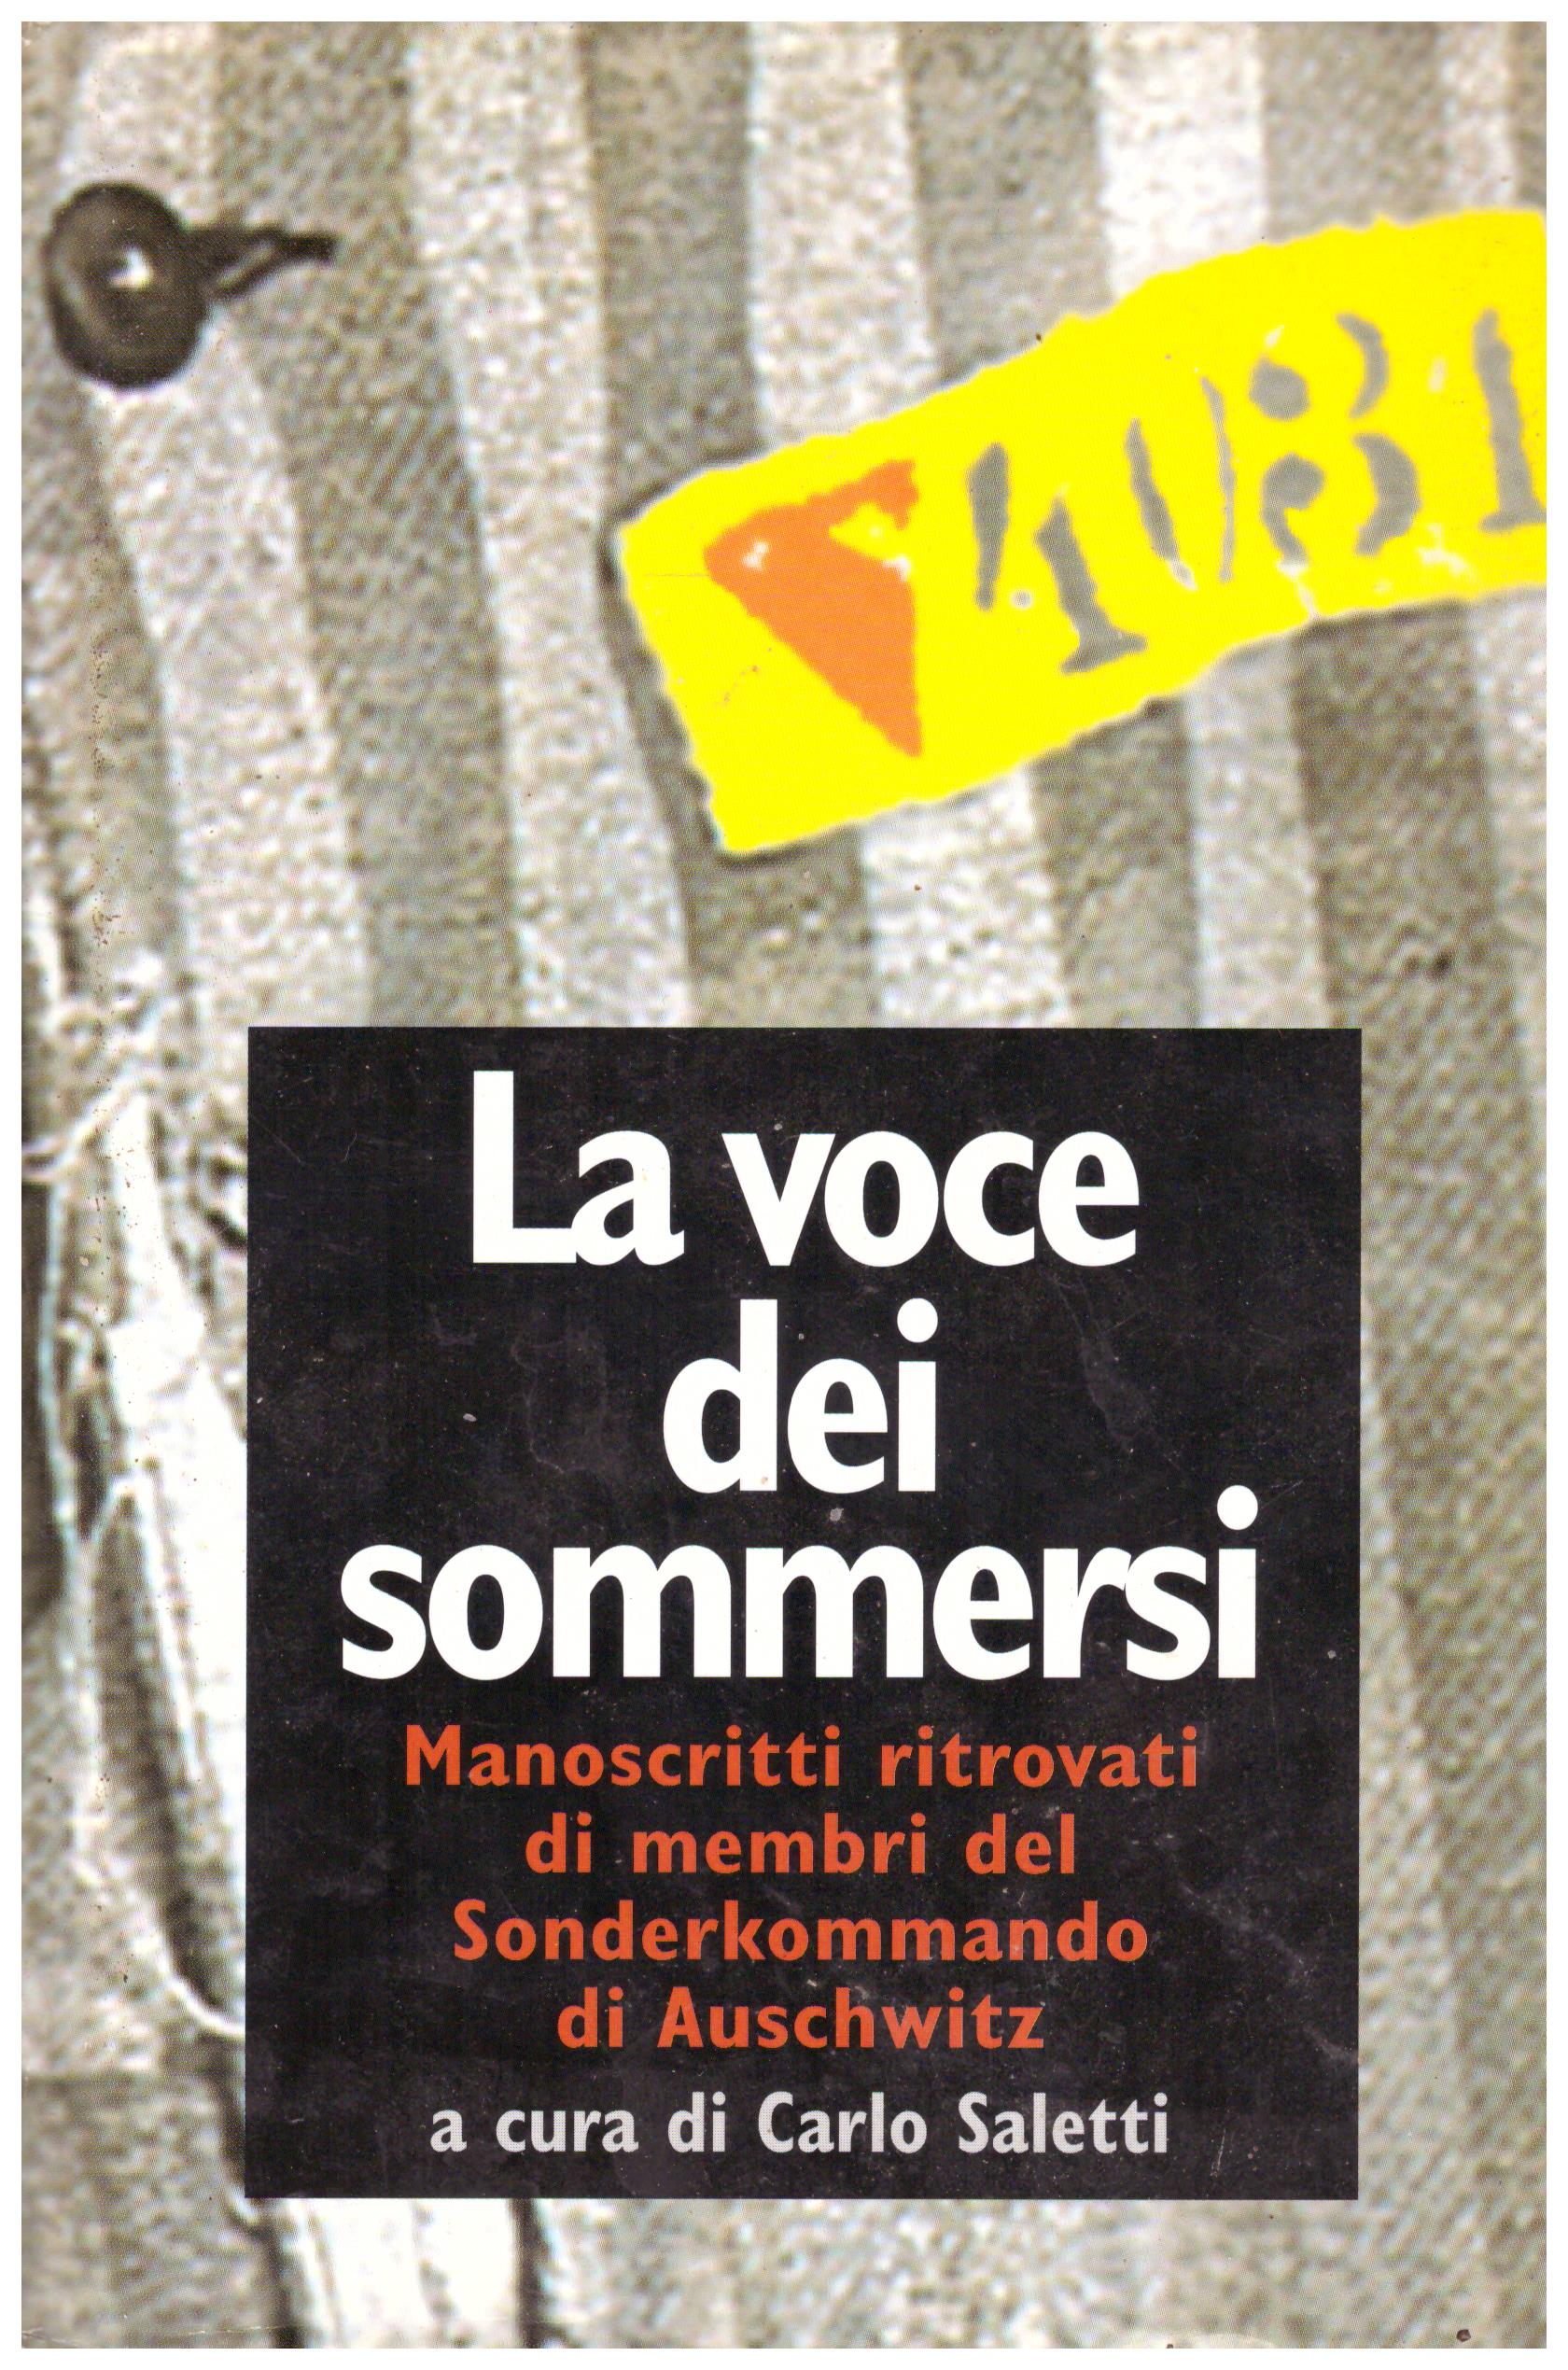 Titolo: Lo voce dei sommersi Autore: AA.VV.  Editore: MARSILIO 1996